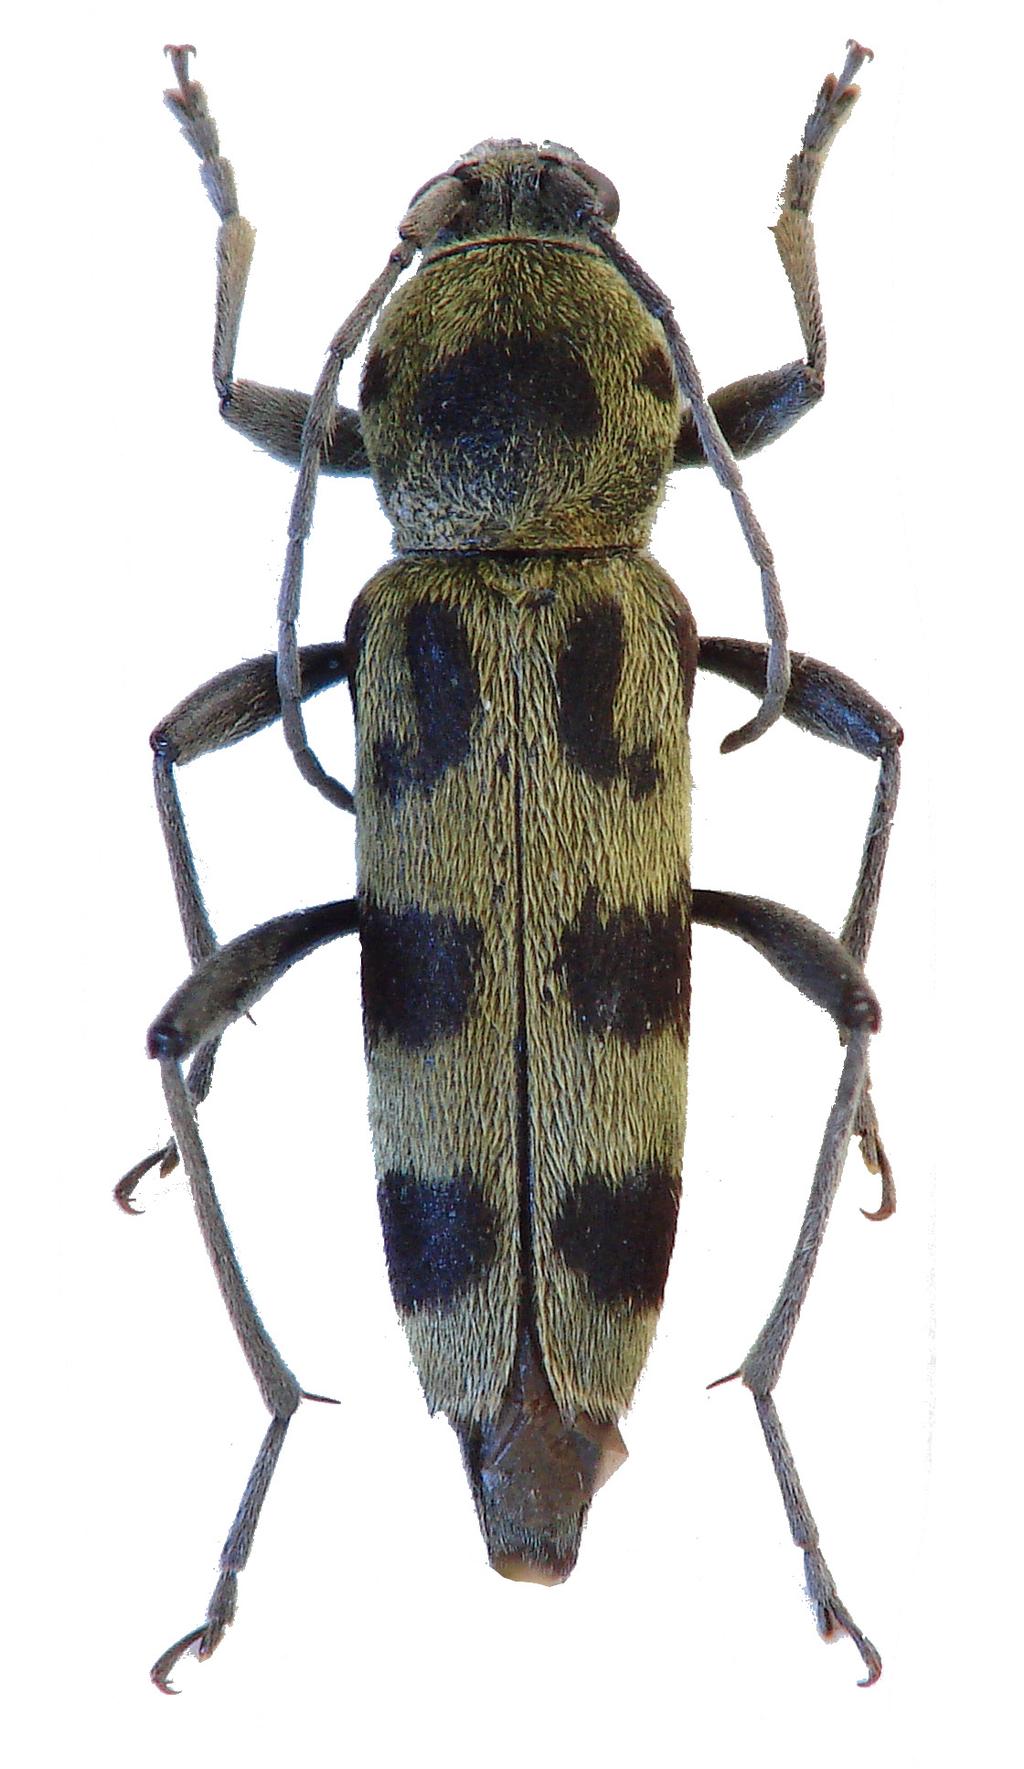 Calosoma sycophanta (Linnaeus, 1758) VU, B: Rejnek (1977), Zahradnický & Mackovčin (2004) V ČR velmi vzácný druh, který je stejně jako předchozí nezvěstný na většině území Čech a v současnosti známý